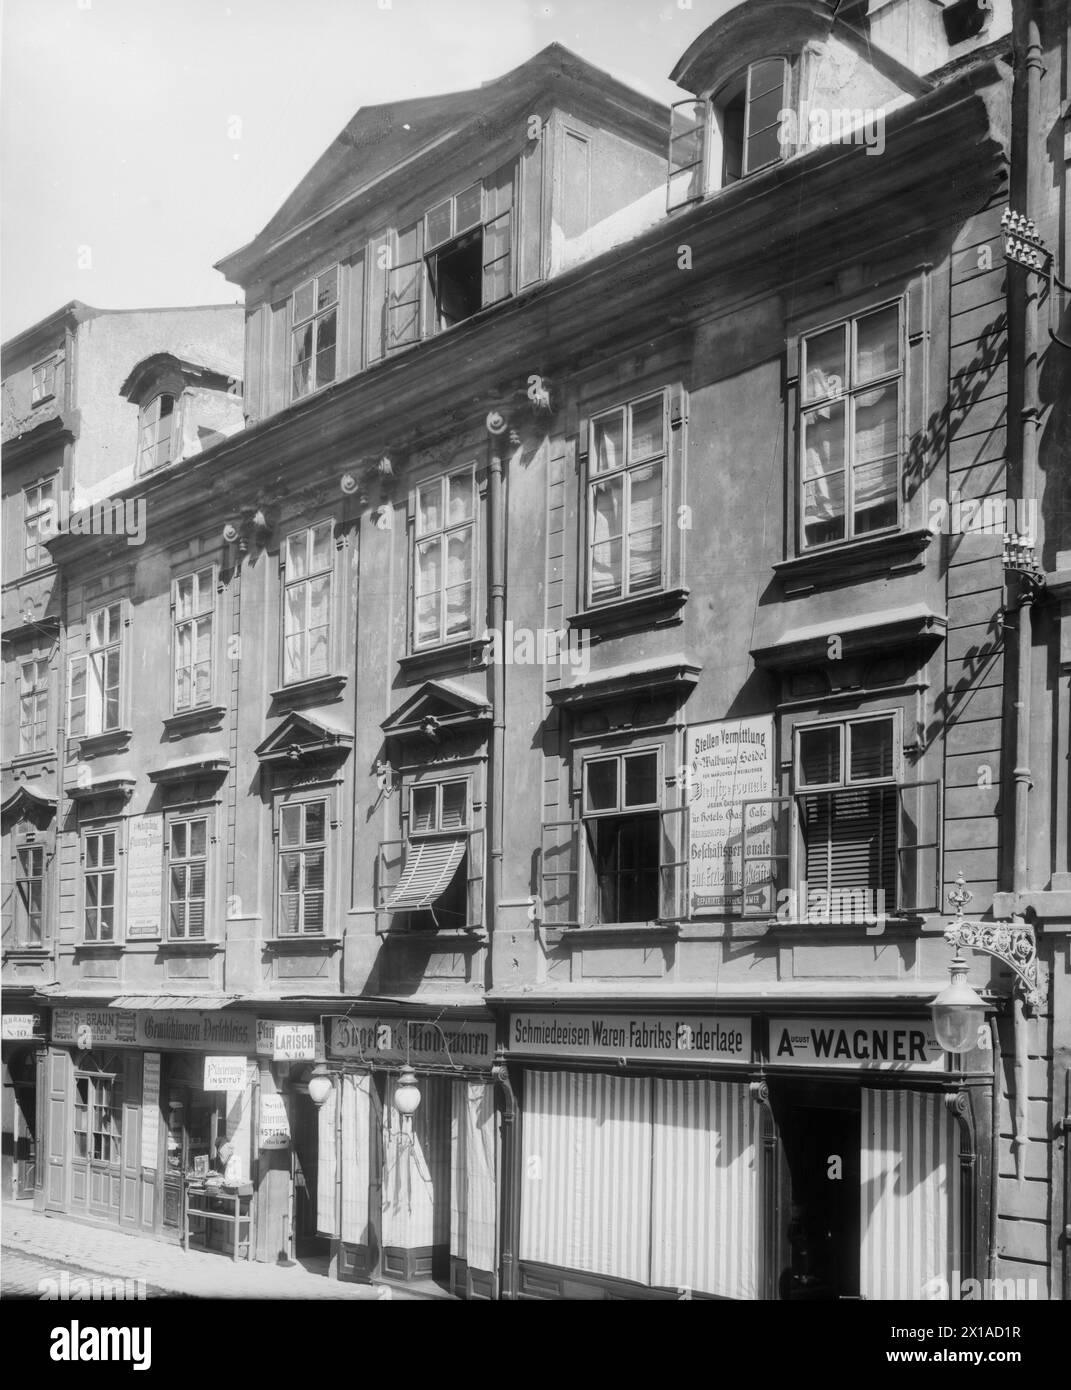 Vienna 1, solco basso 10, facciata diagonalmente di fronte alla destra, 1898 - 18980101 PD0695 - Rechteinfo: Rights Managed (RM) Foto Stock